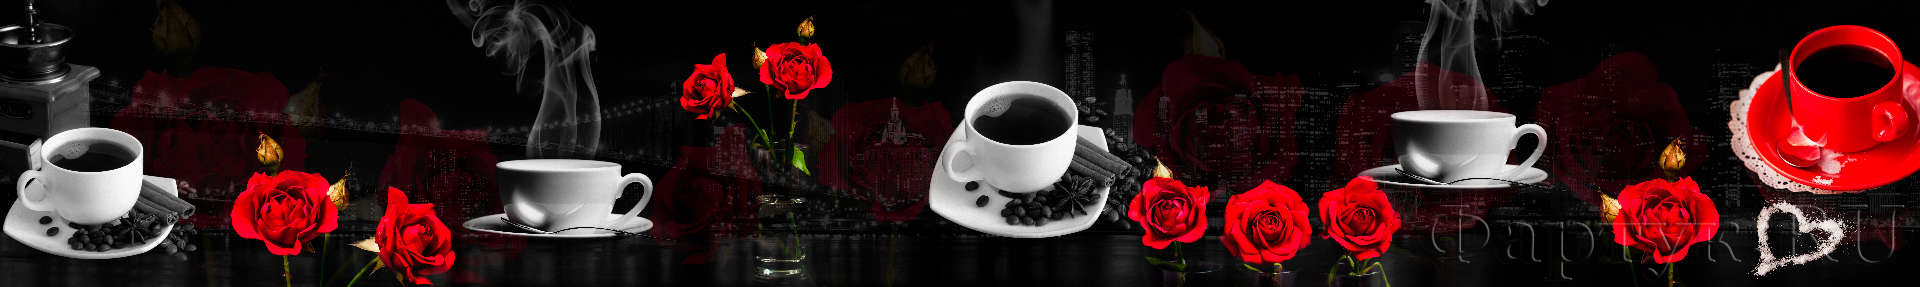 Красные розы и чашки кофе на фоне черно-белого города